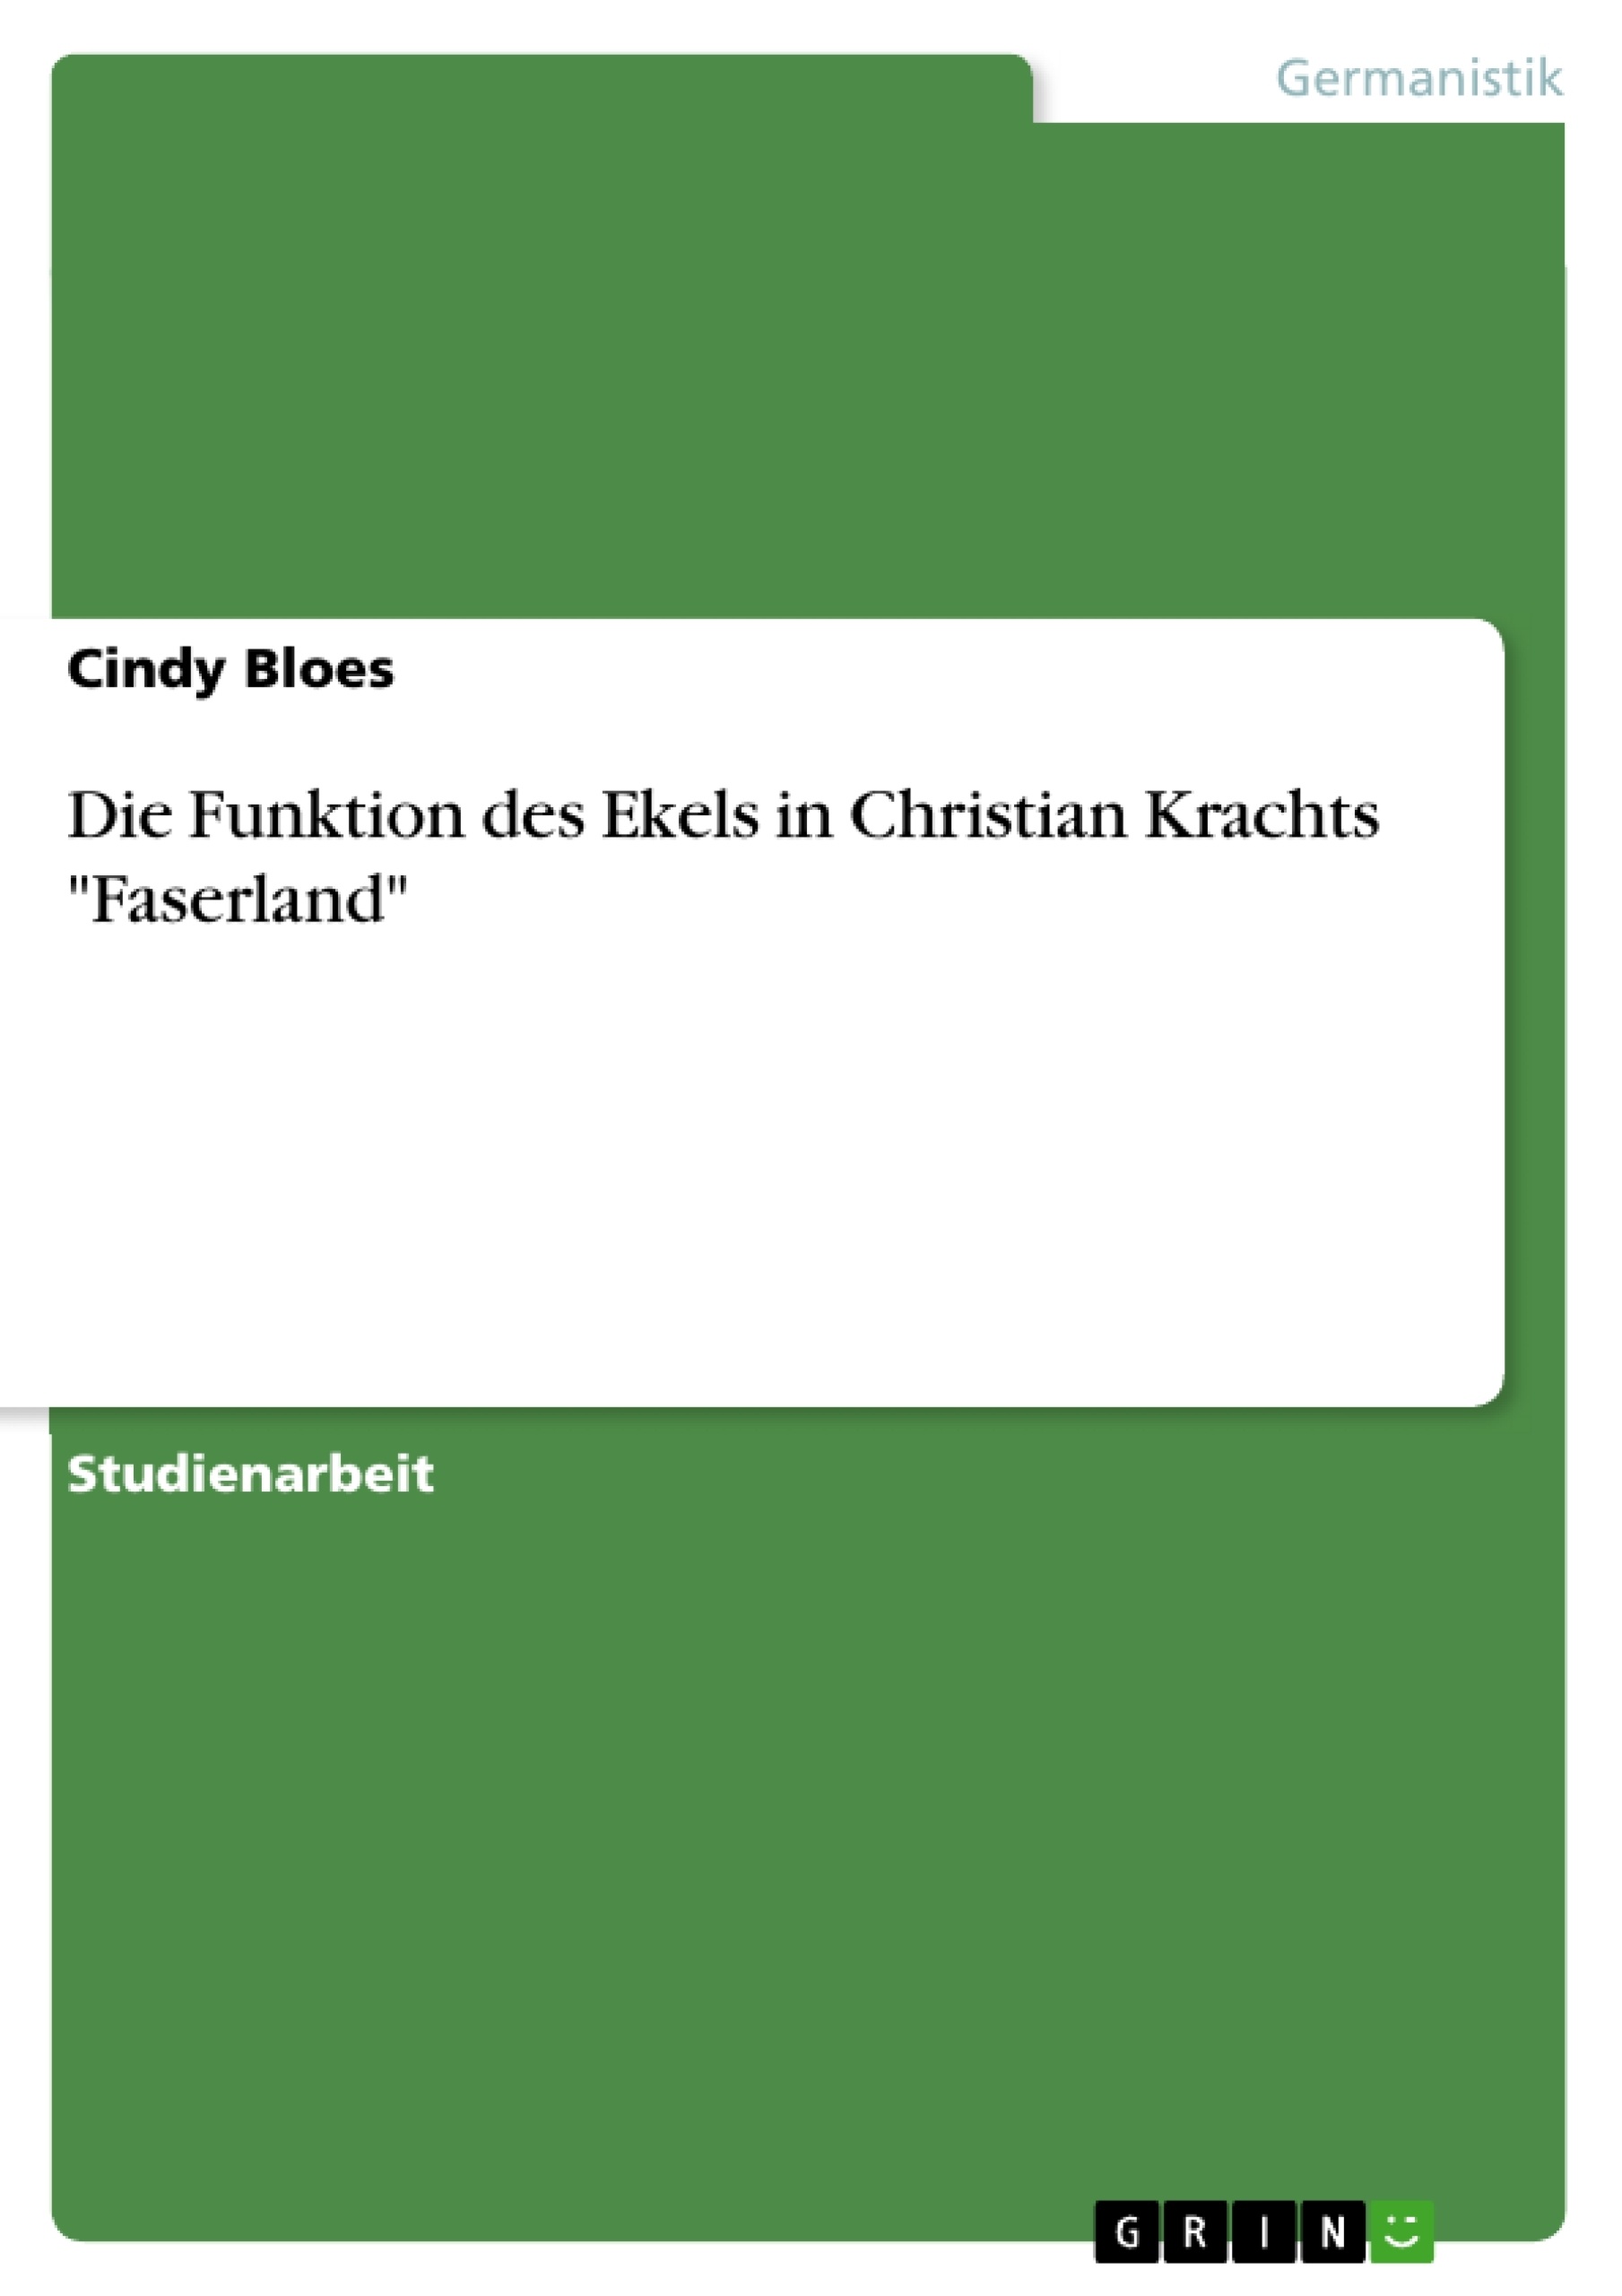 Title: Die Funktion des Ekels in Christian Krachts "Faserland"